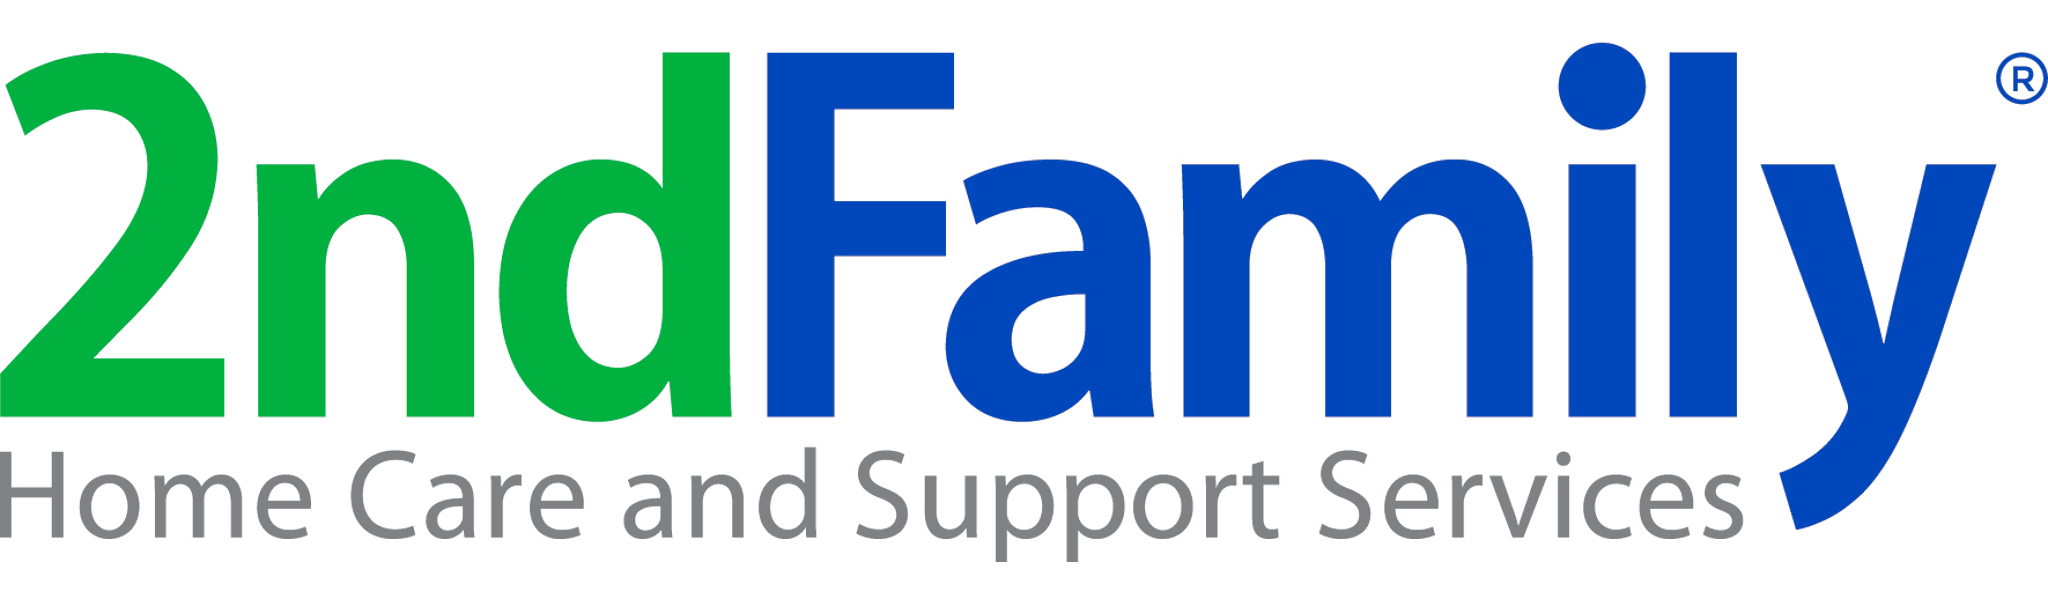 FranNet Verified Brand - 2nd Family Logo